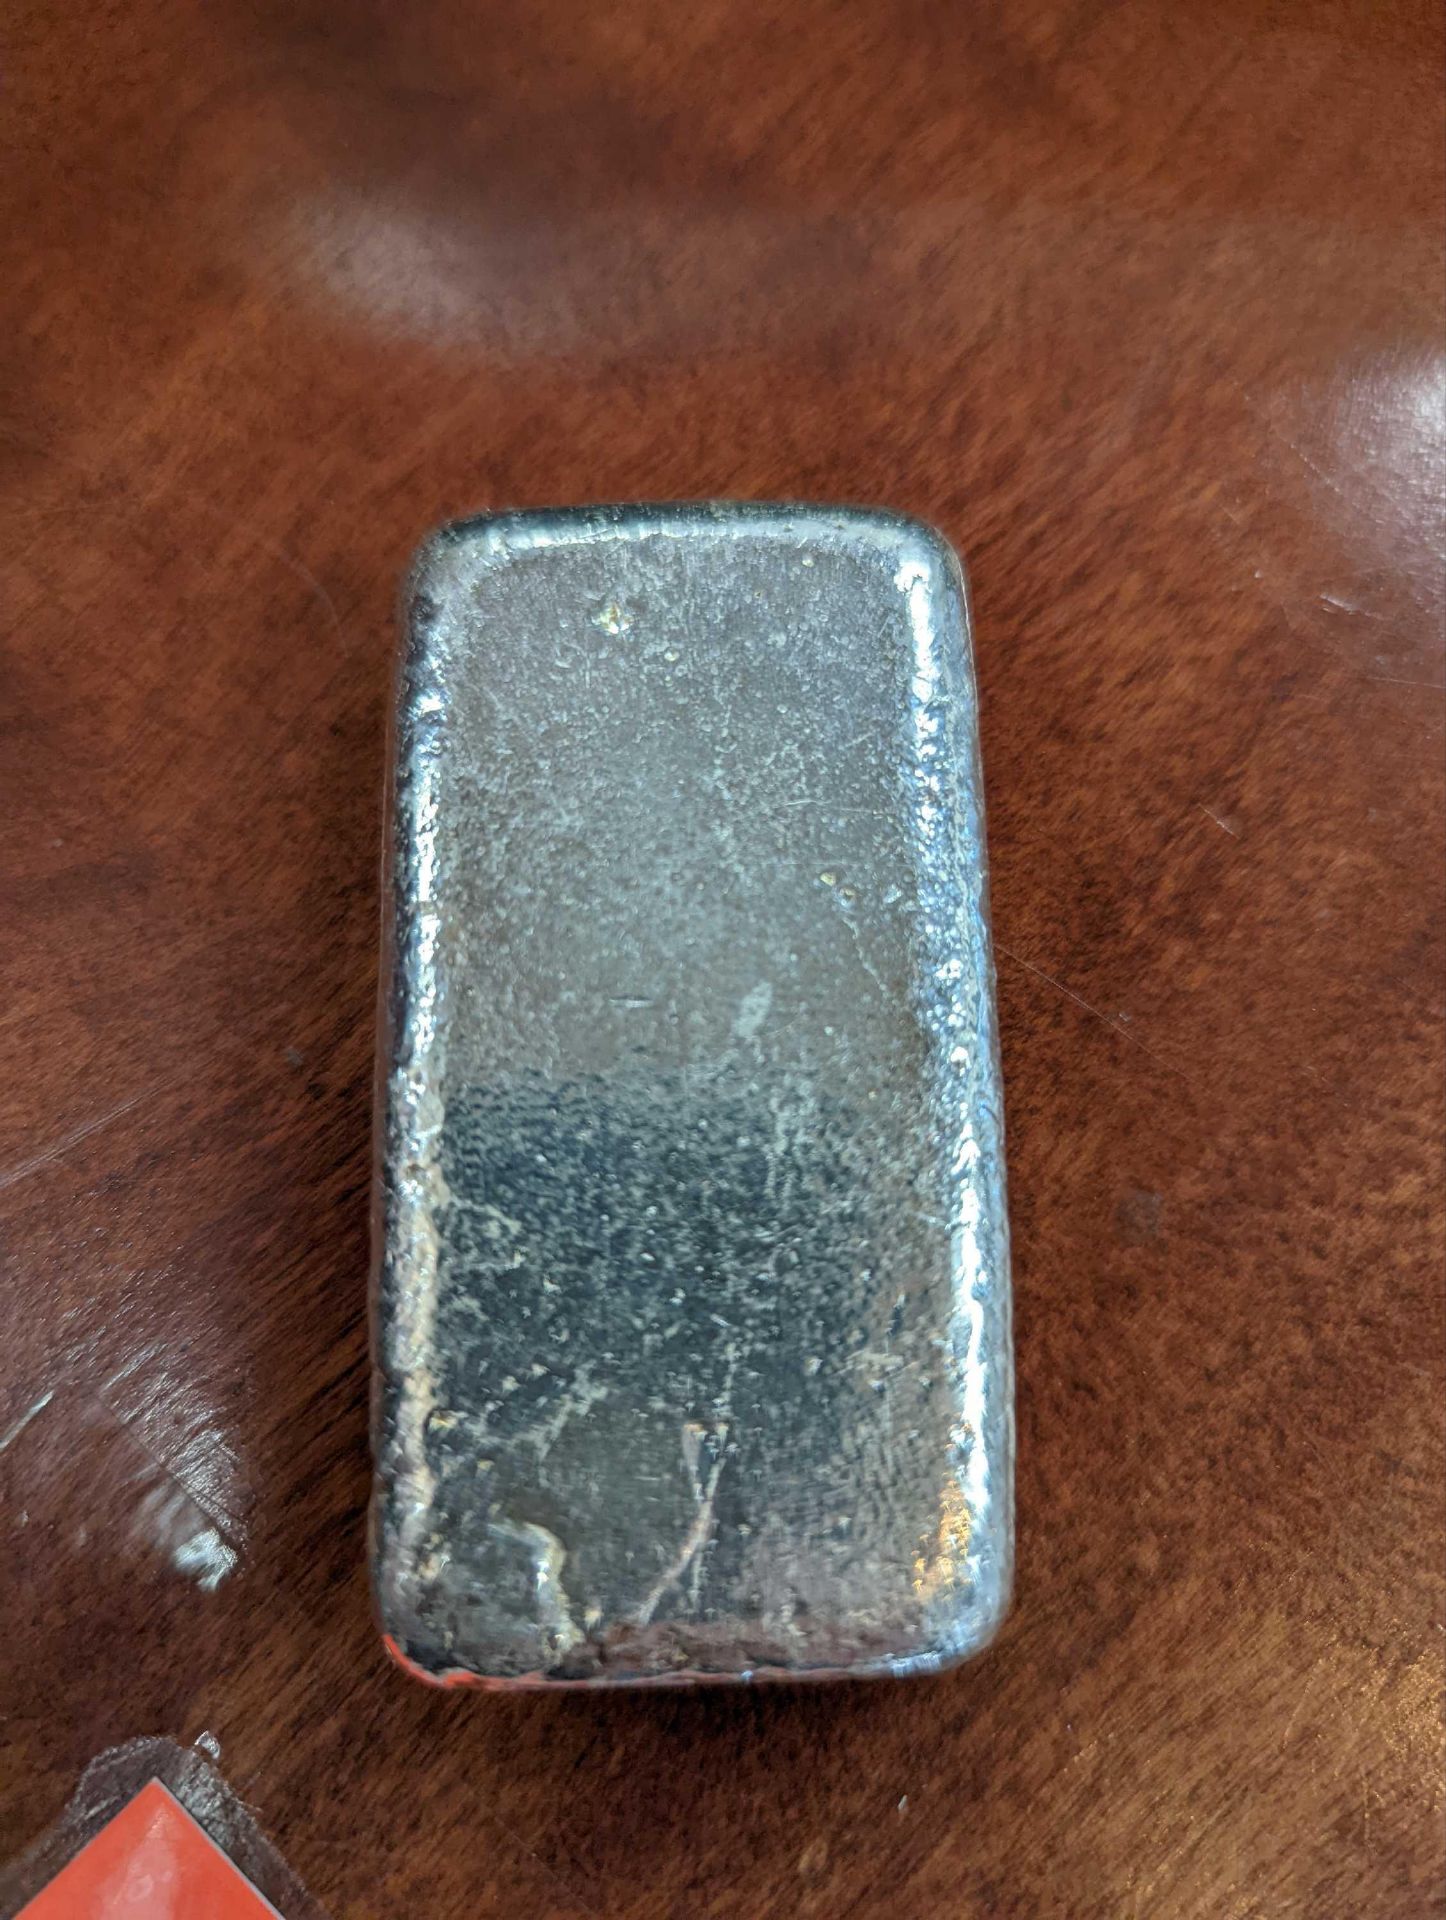 10 oz silver bar